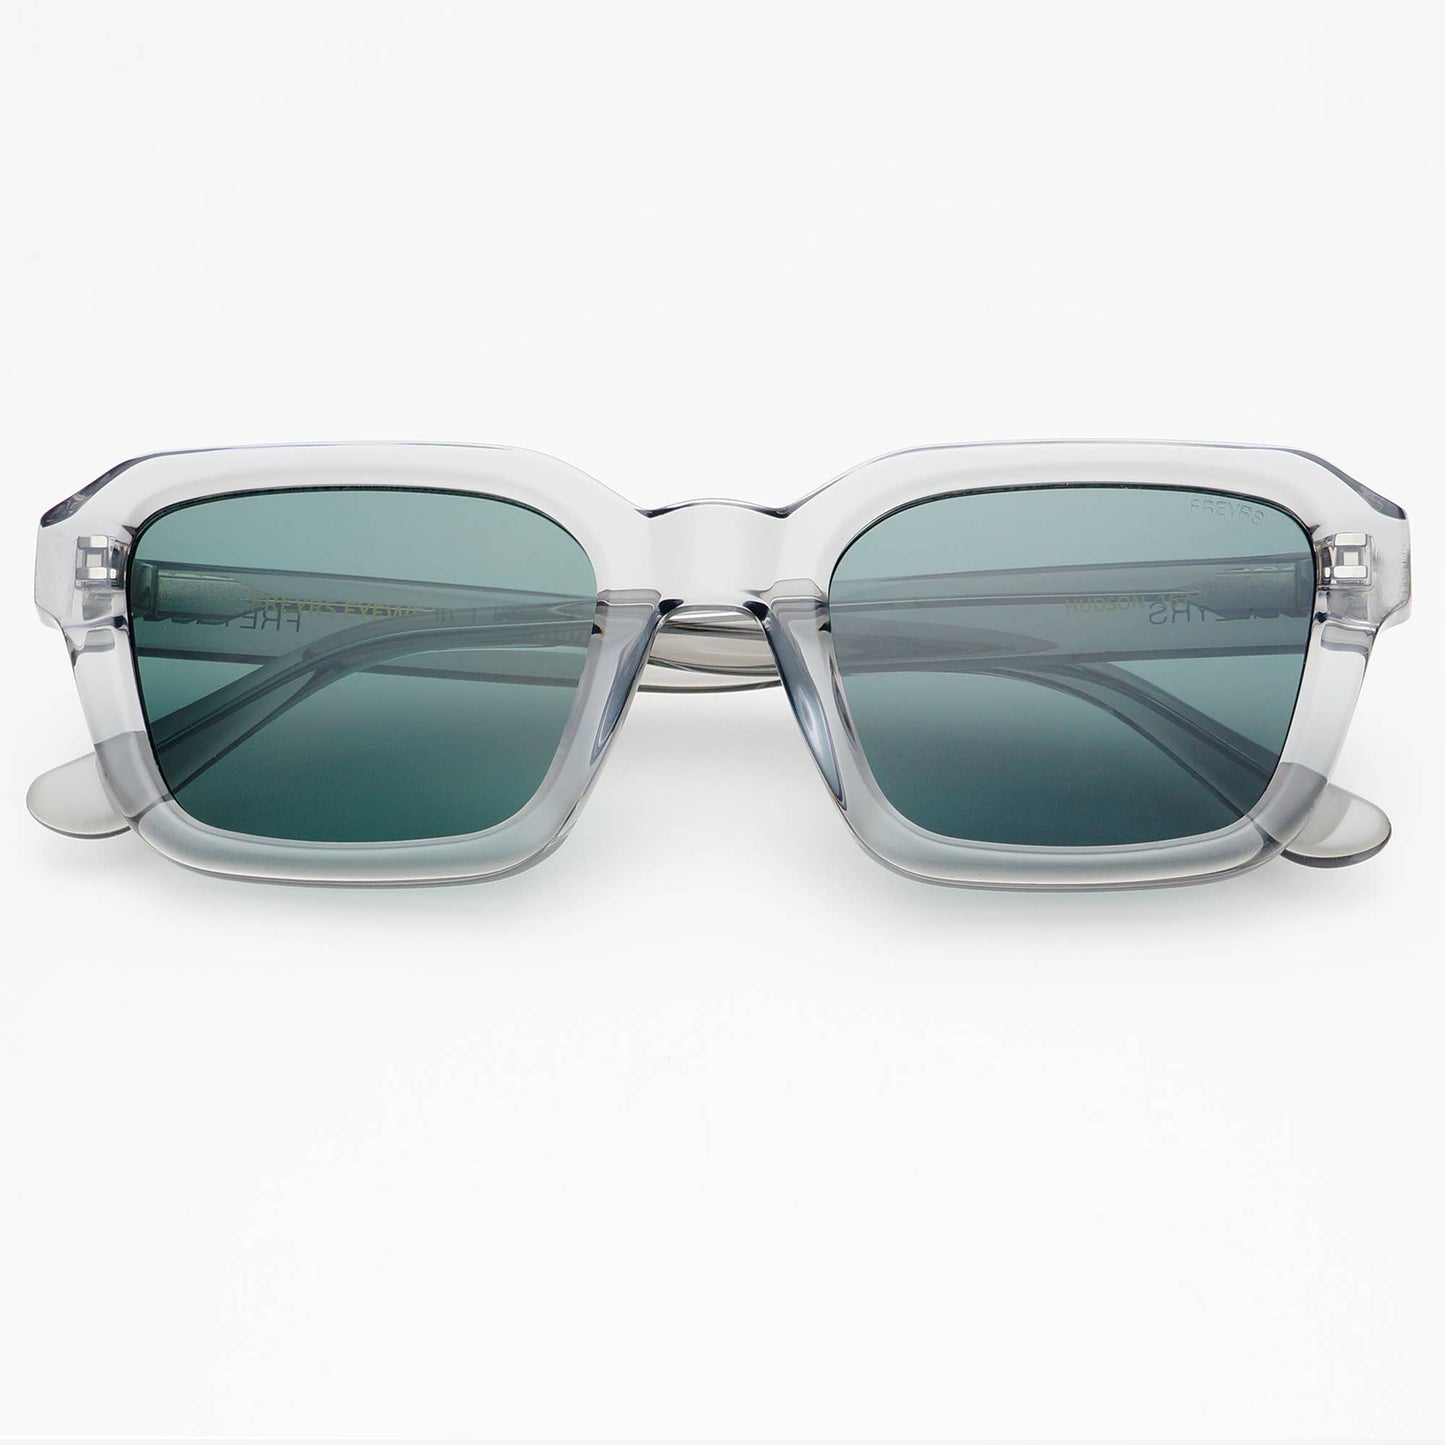 Hudson Acetate Unisex Rectangular Sunglasses